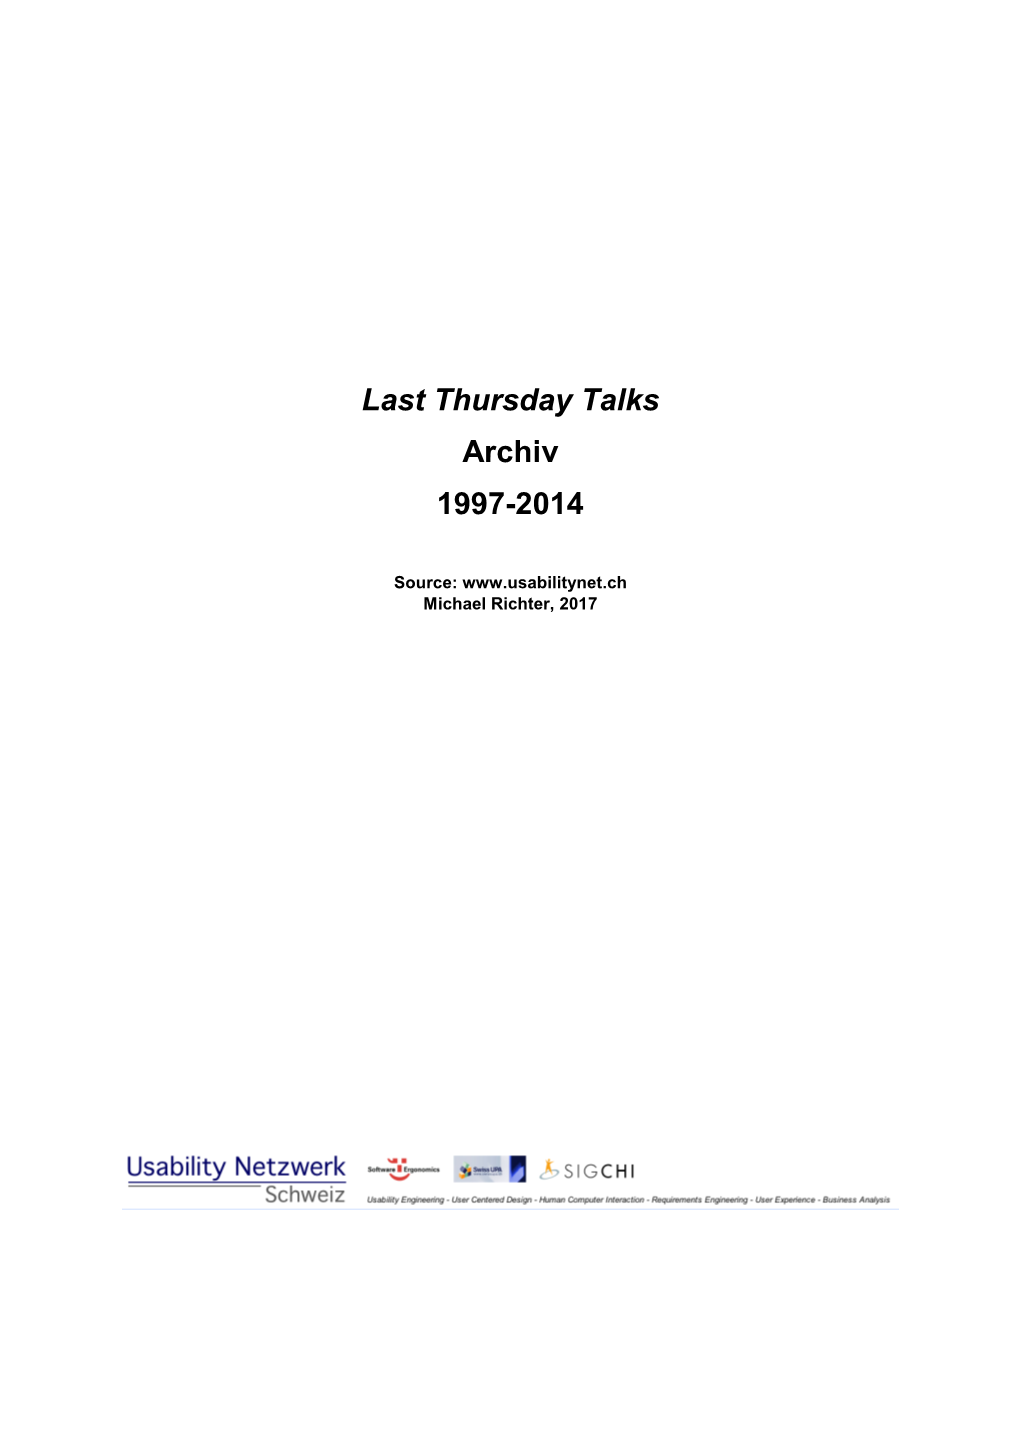 Last Thursday Talks Archiv 1997-2014